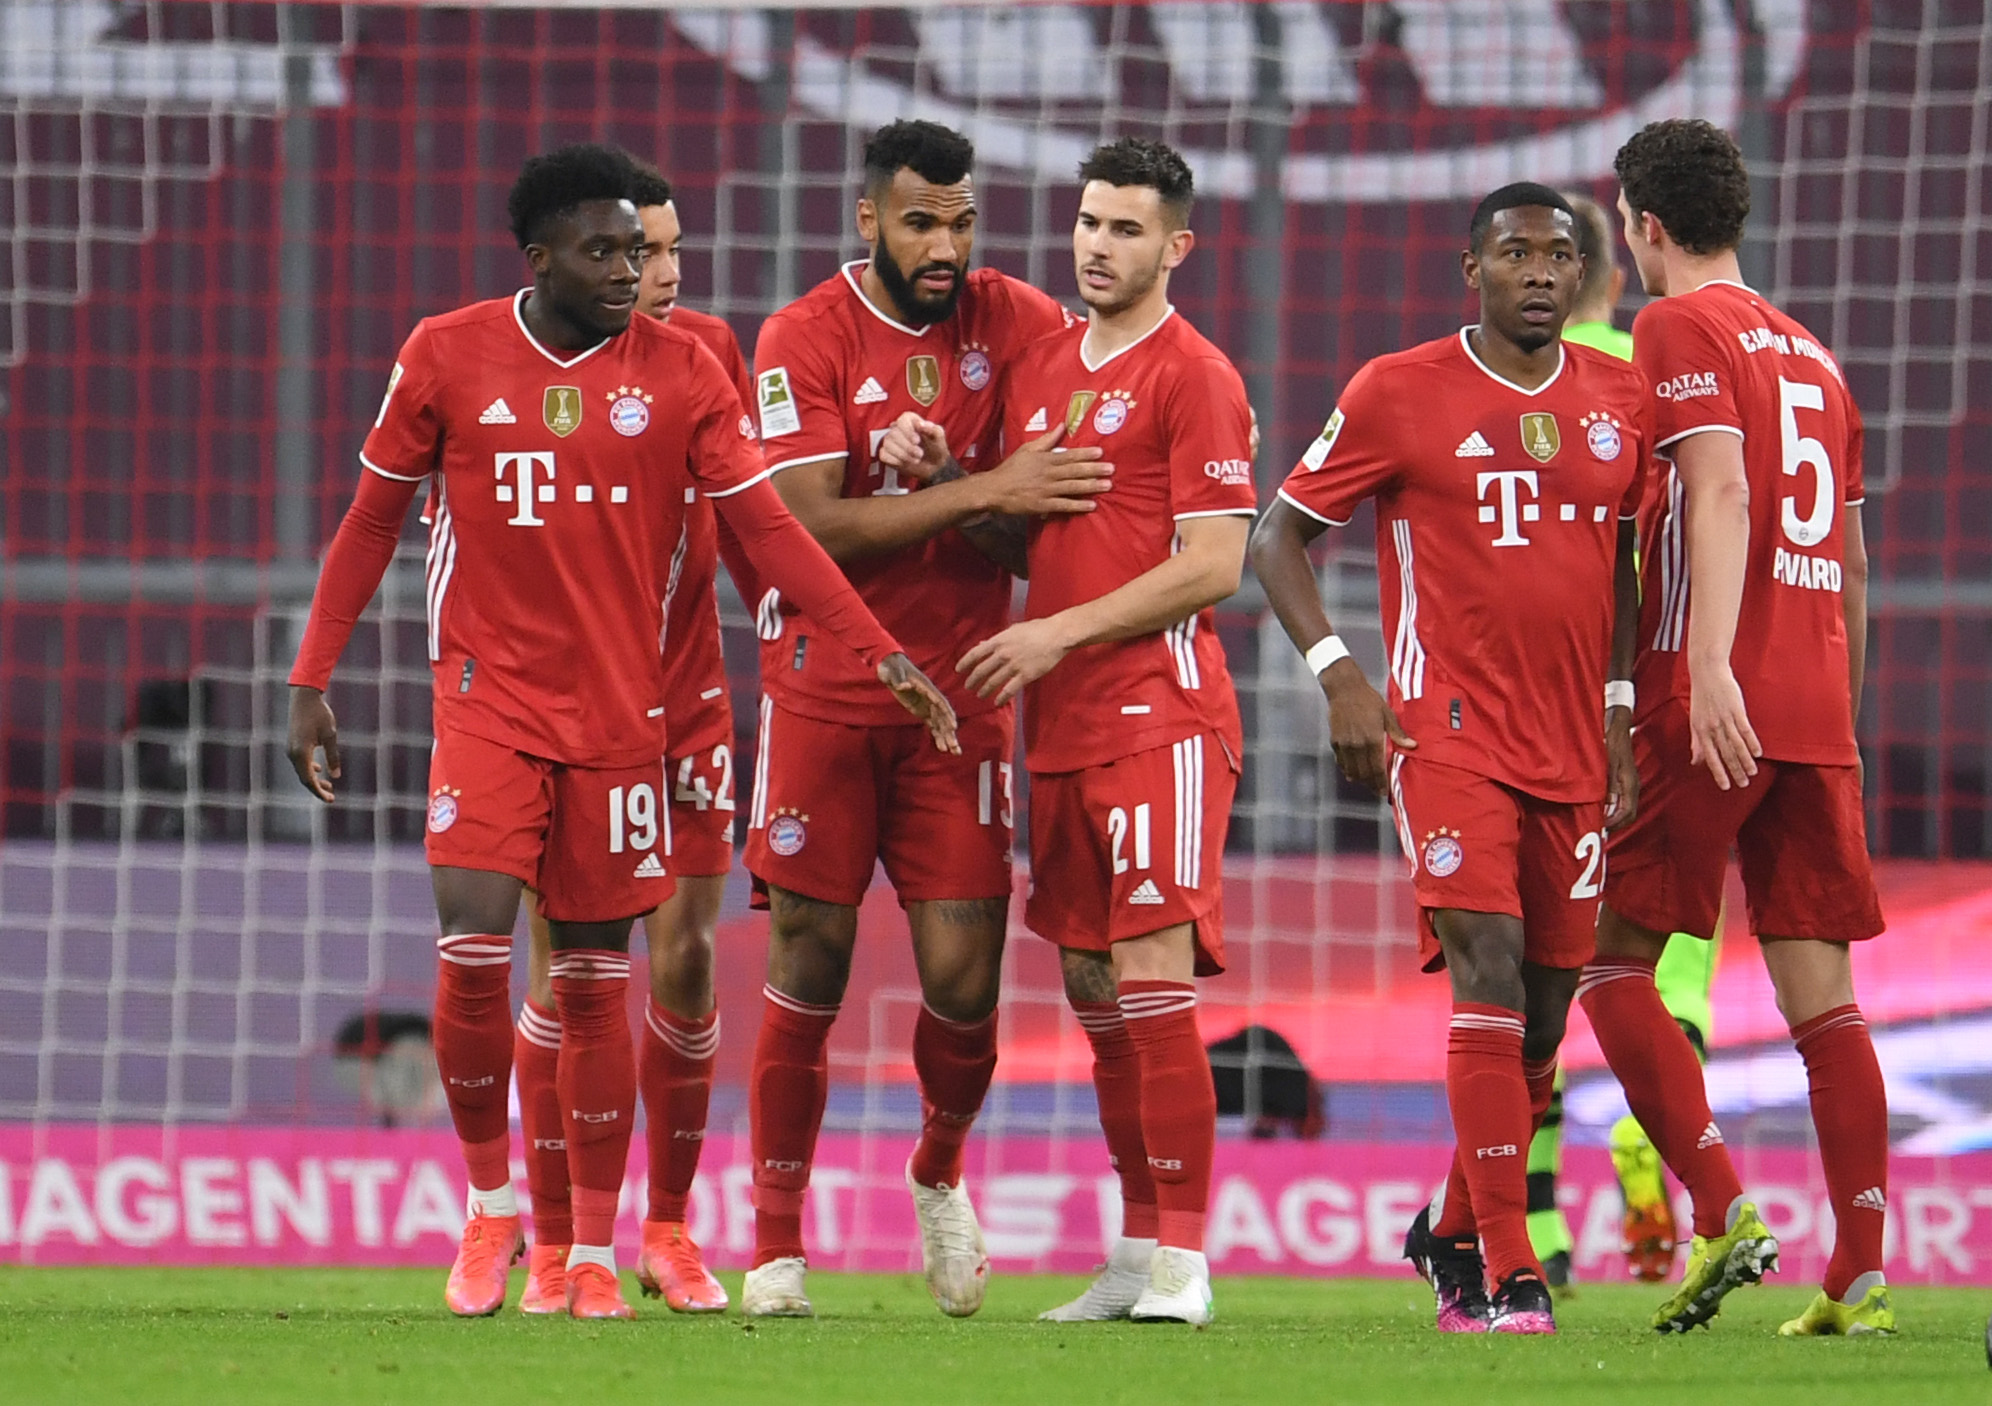 Bayern Munich phân chia bảng lương theo chuẩn mực